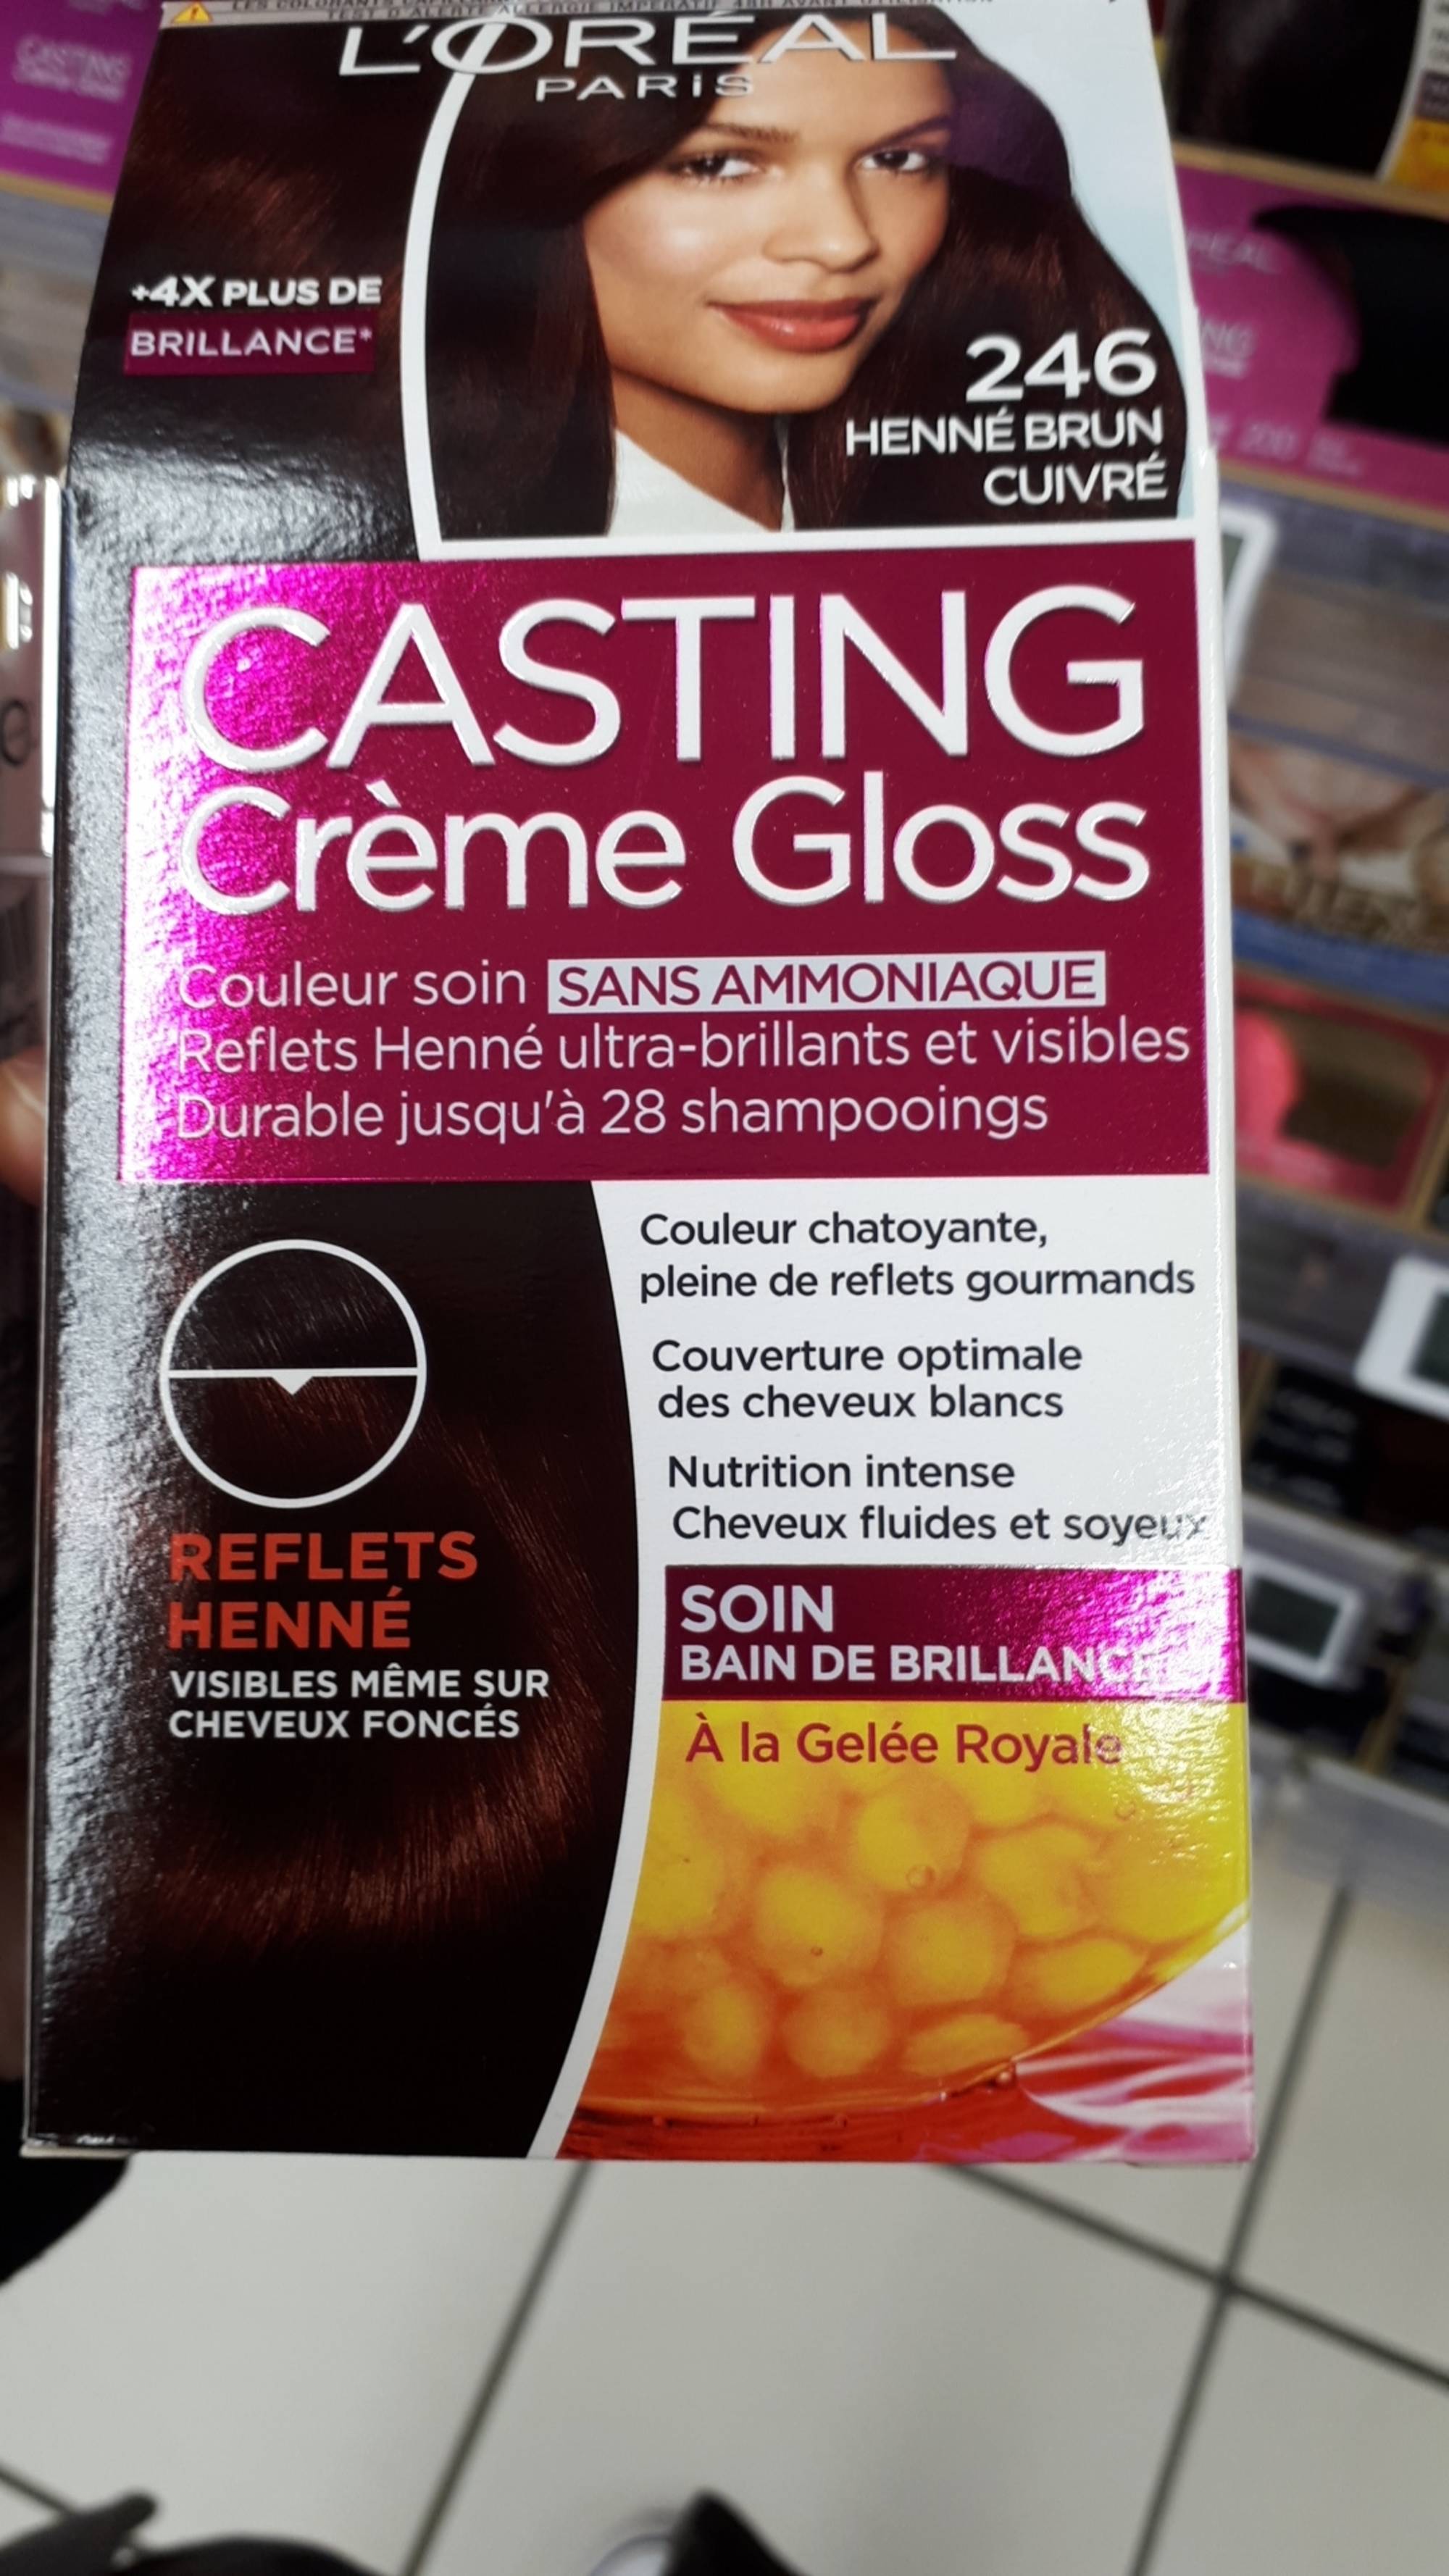 L'ORÉAL - Casting crème gloss - Couleur soin 2.46 henné brun cuivré